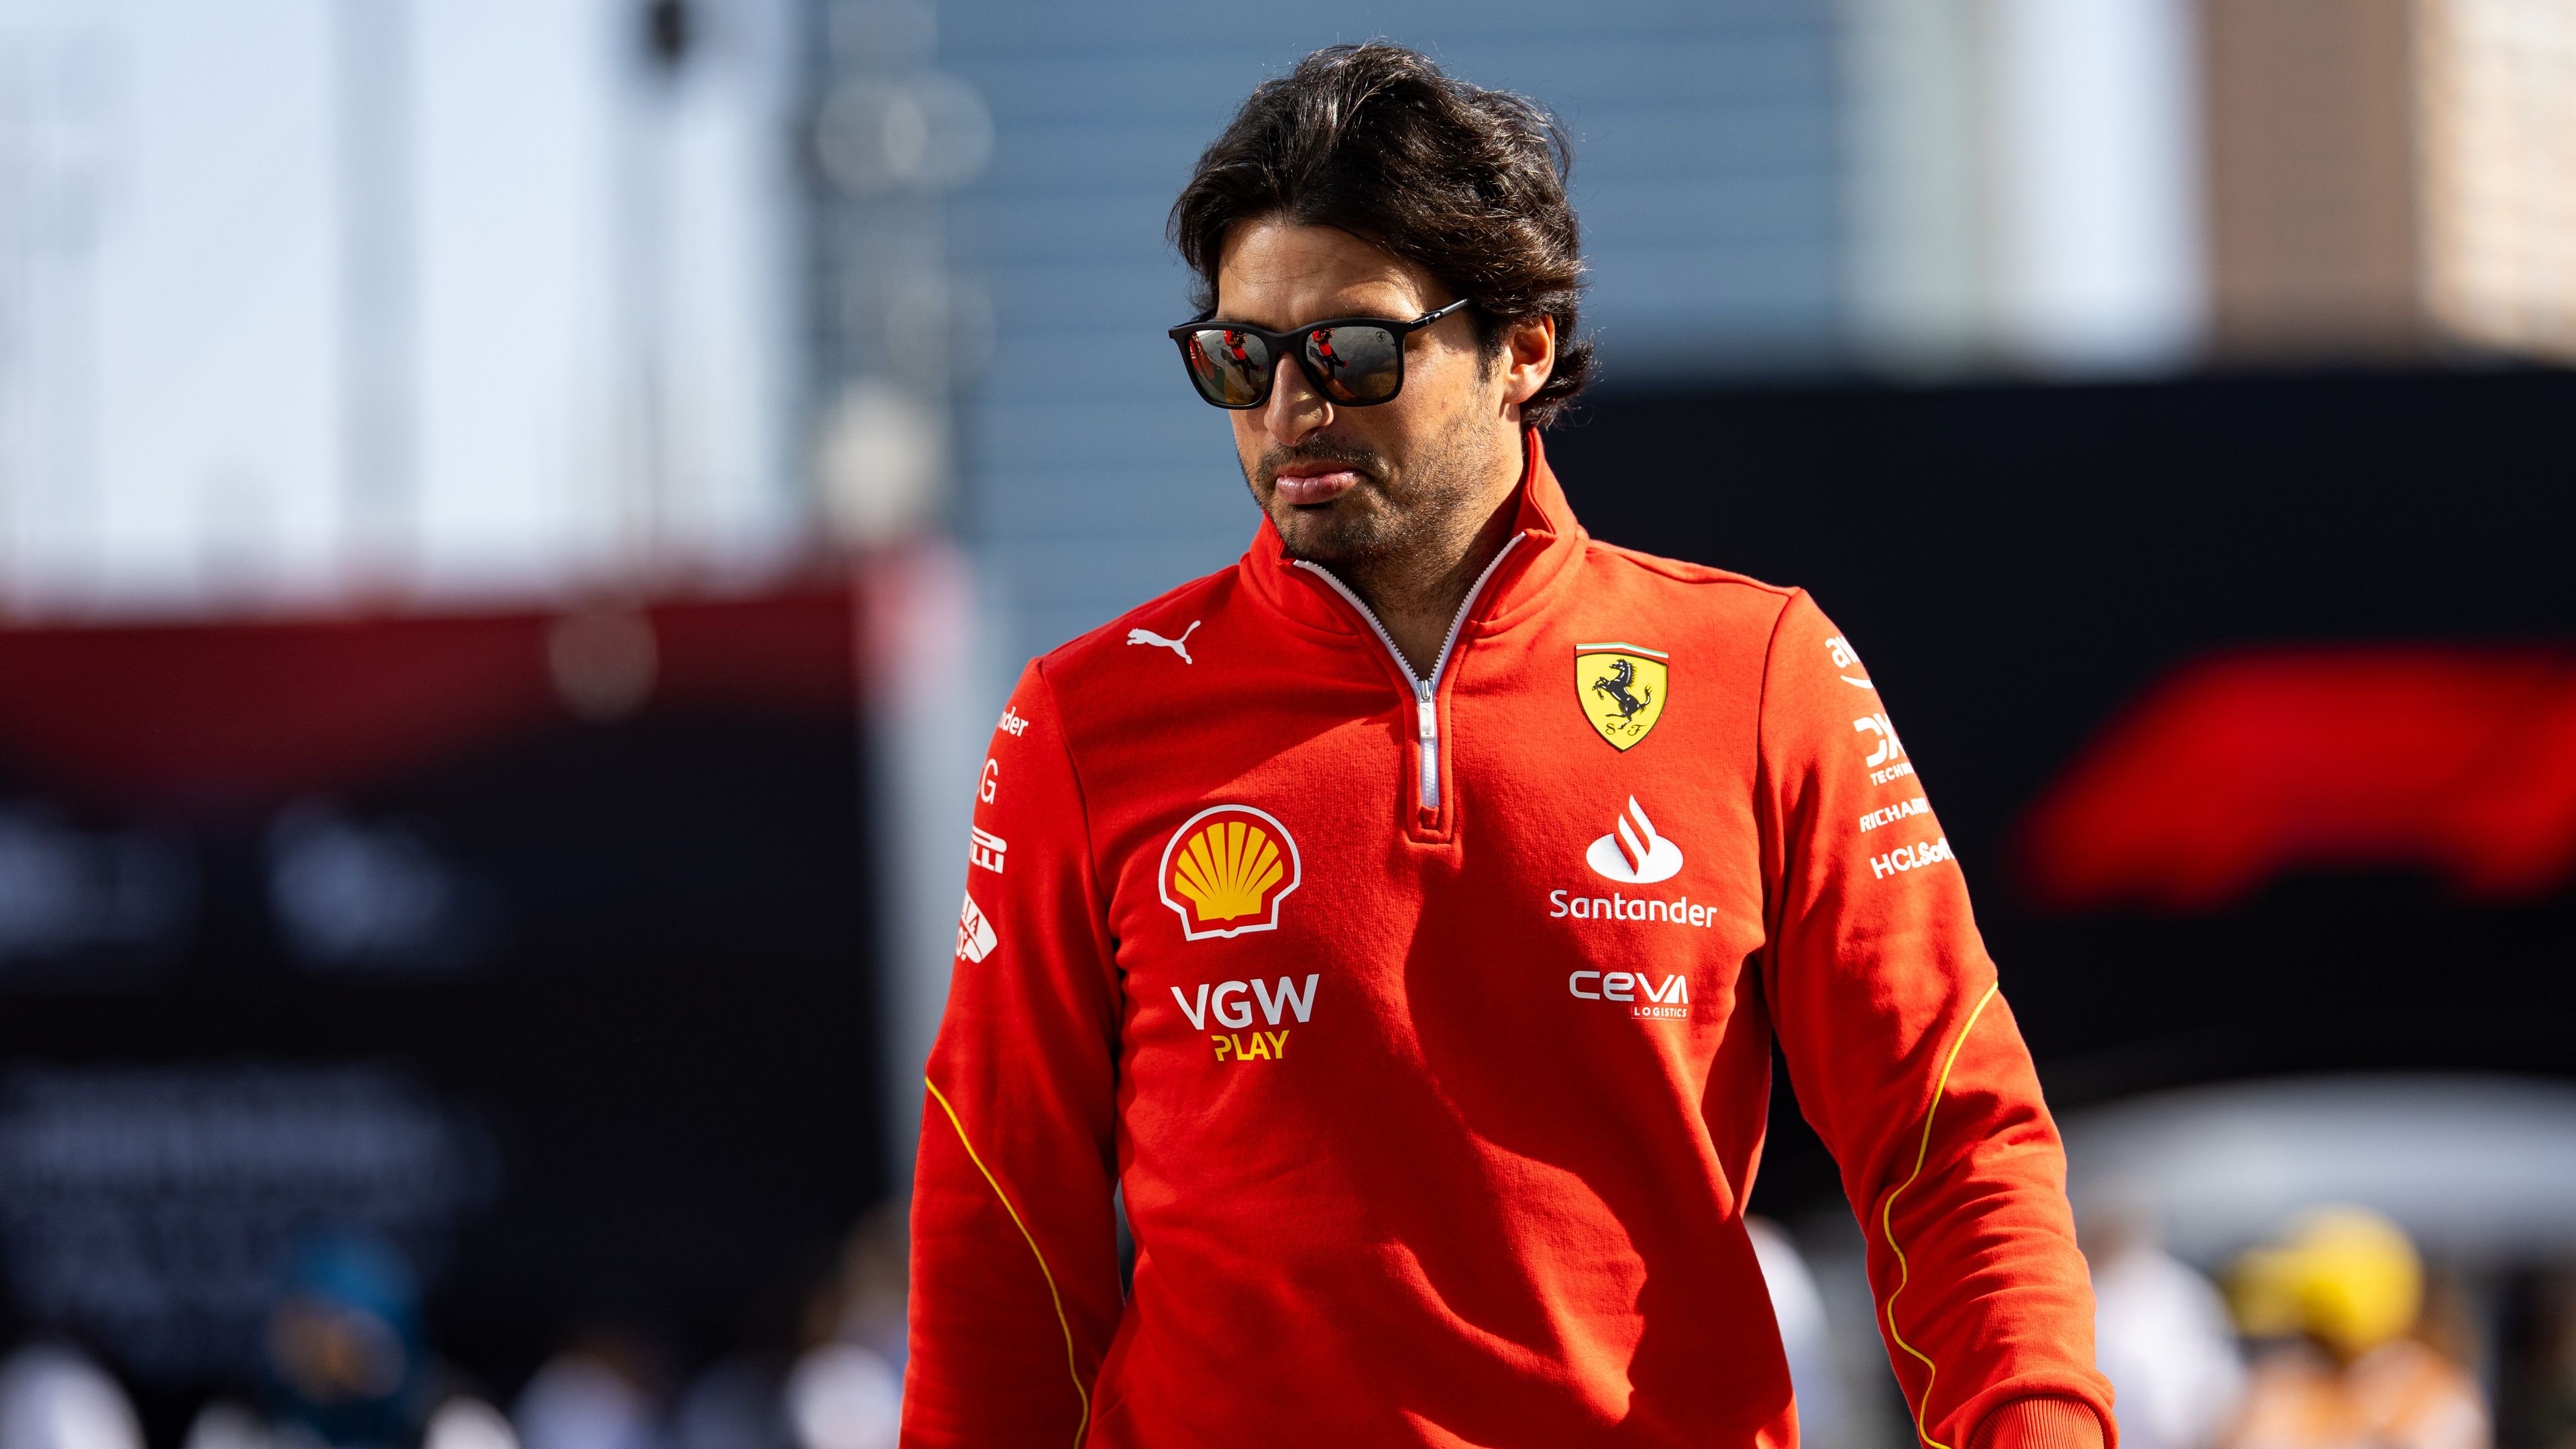 F1-hírek: pilótát kell cserélni a Ferrarinál